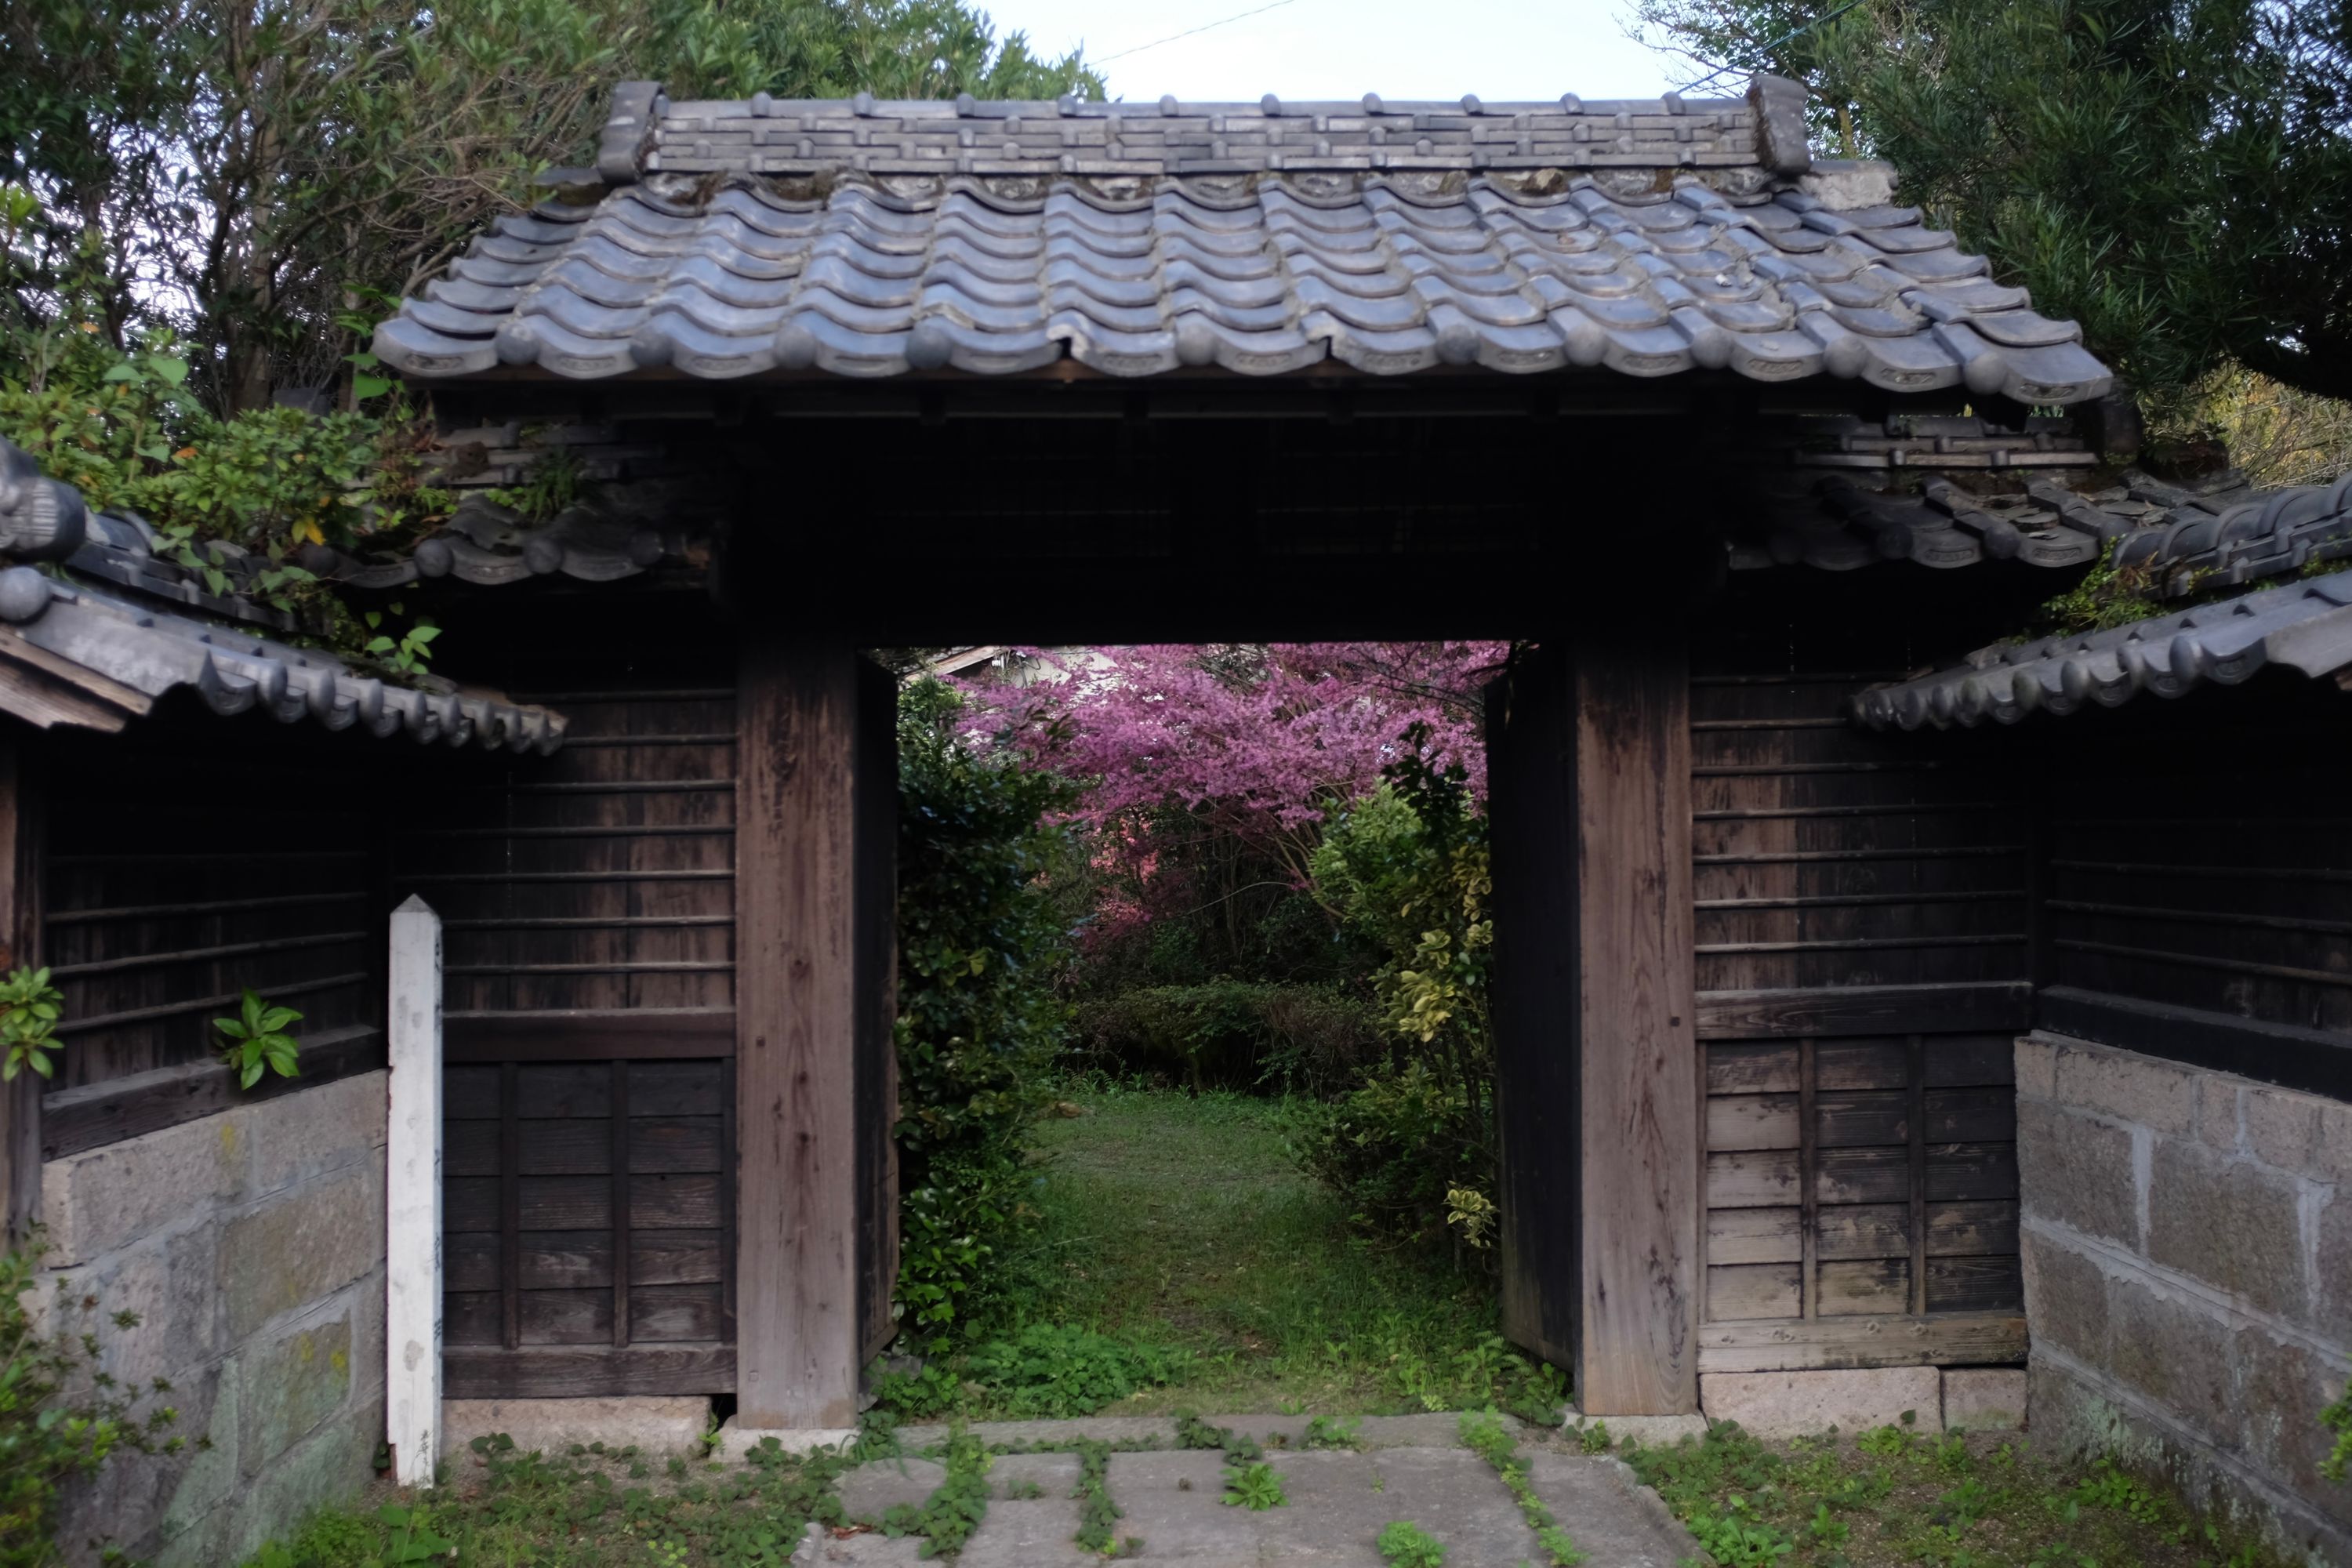 A garden of azaleas visible through the gate of a country house.